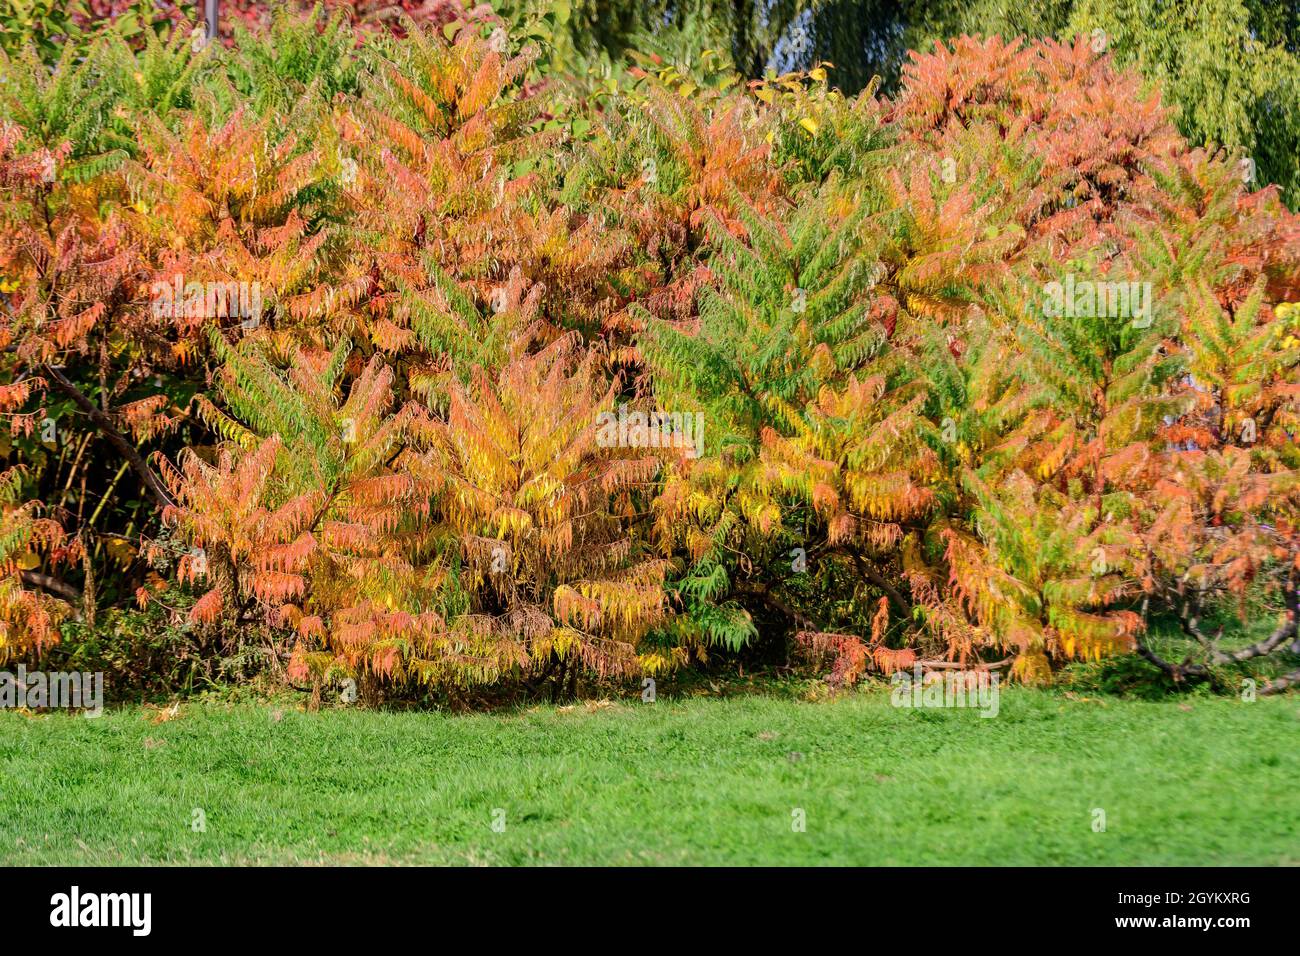 Minimalistischer monochromer Hintergrund mit großen roten und orangen Blättern und kleinen Blüten des Rhus-Strauches, allgemein bekannt als Sumac, Sumach oder sumaq, in einem Ga Stockfoto